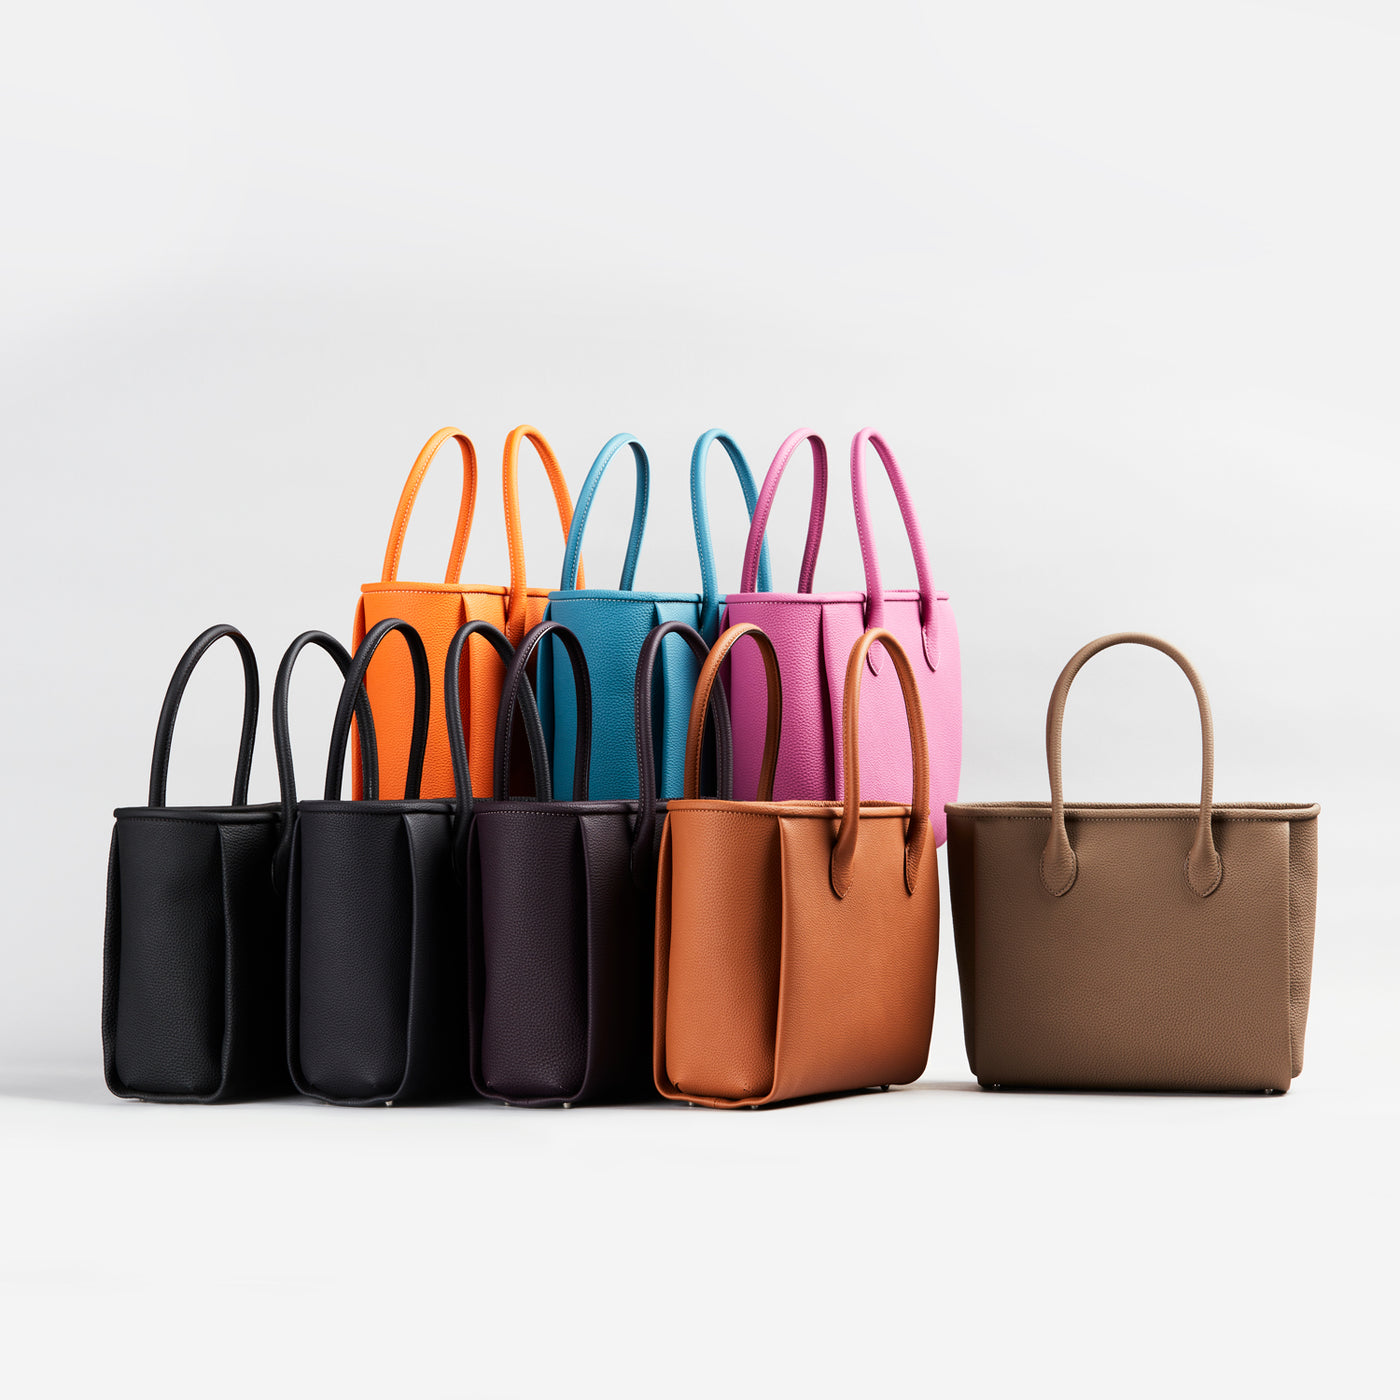 大峡製鞄のイタリア製ナイロンと革のコンビのトートバッグ、大峡製鞄らしい革使いです